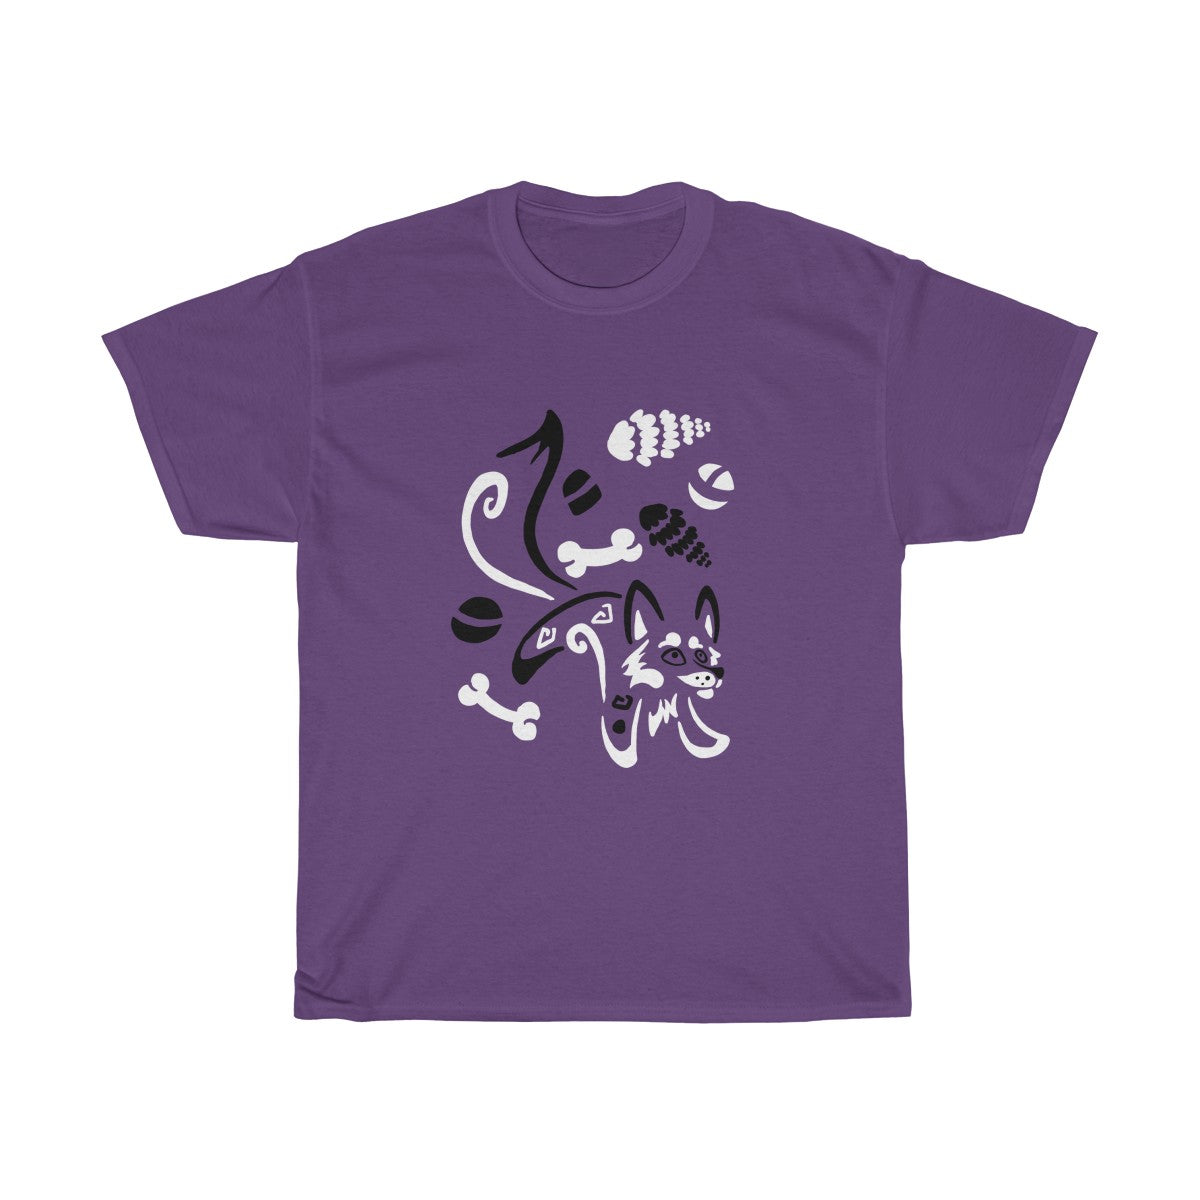 Yotes & Bones - T-Shirt T-Shirt Dire Creatures Purple S 